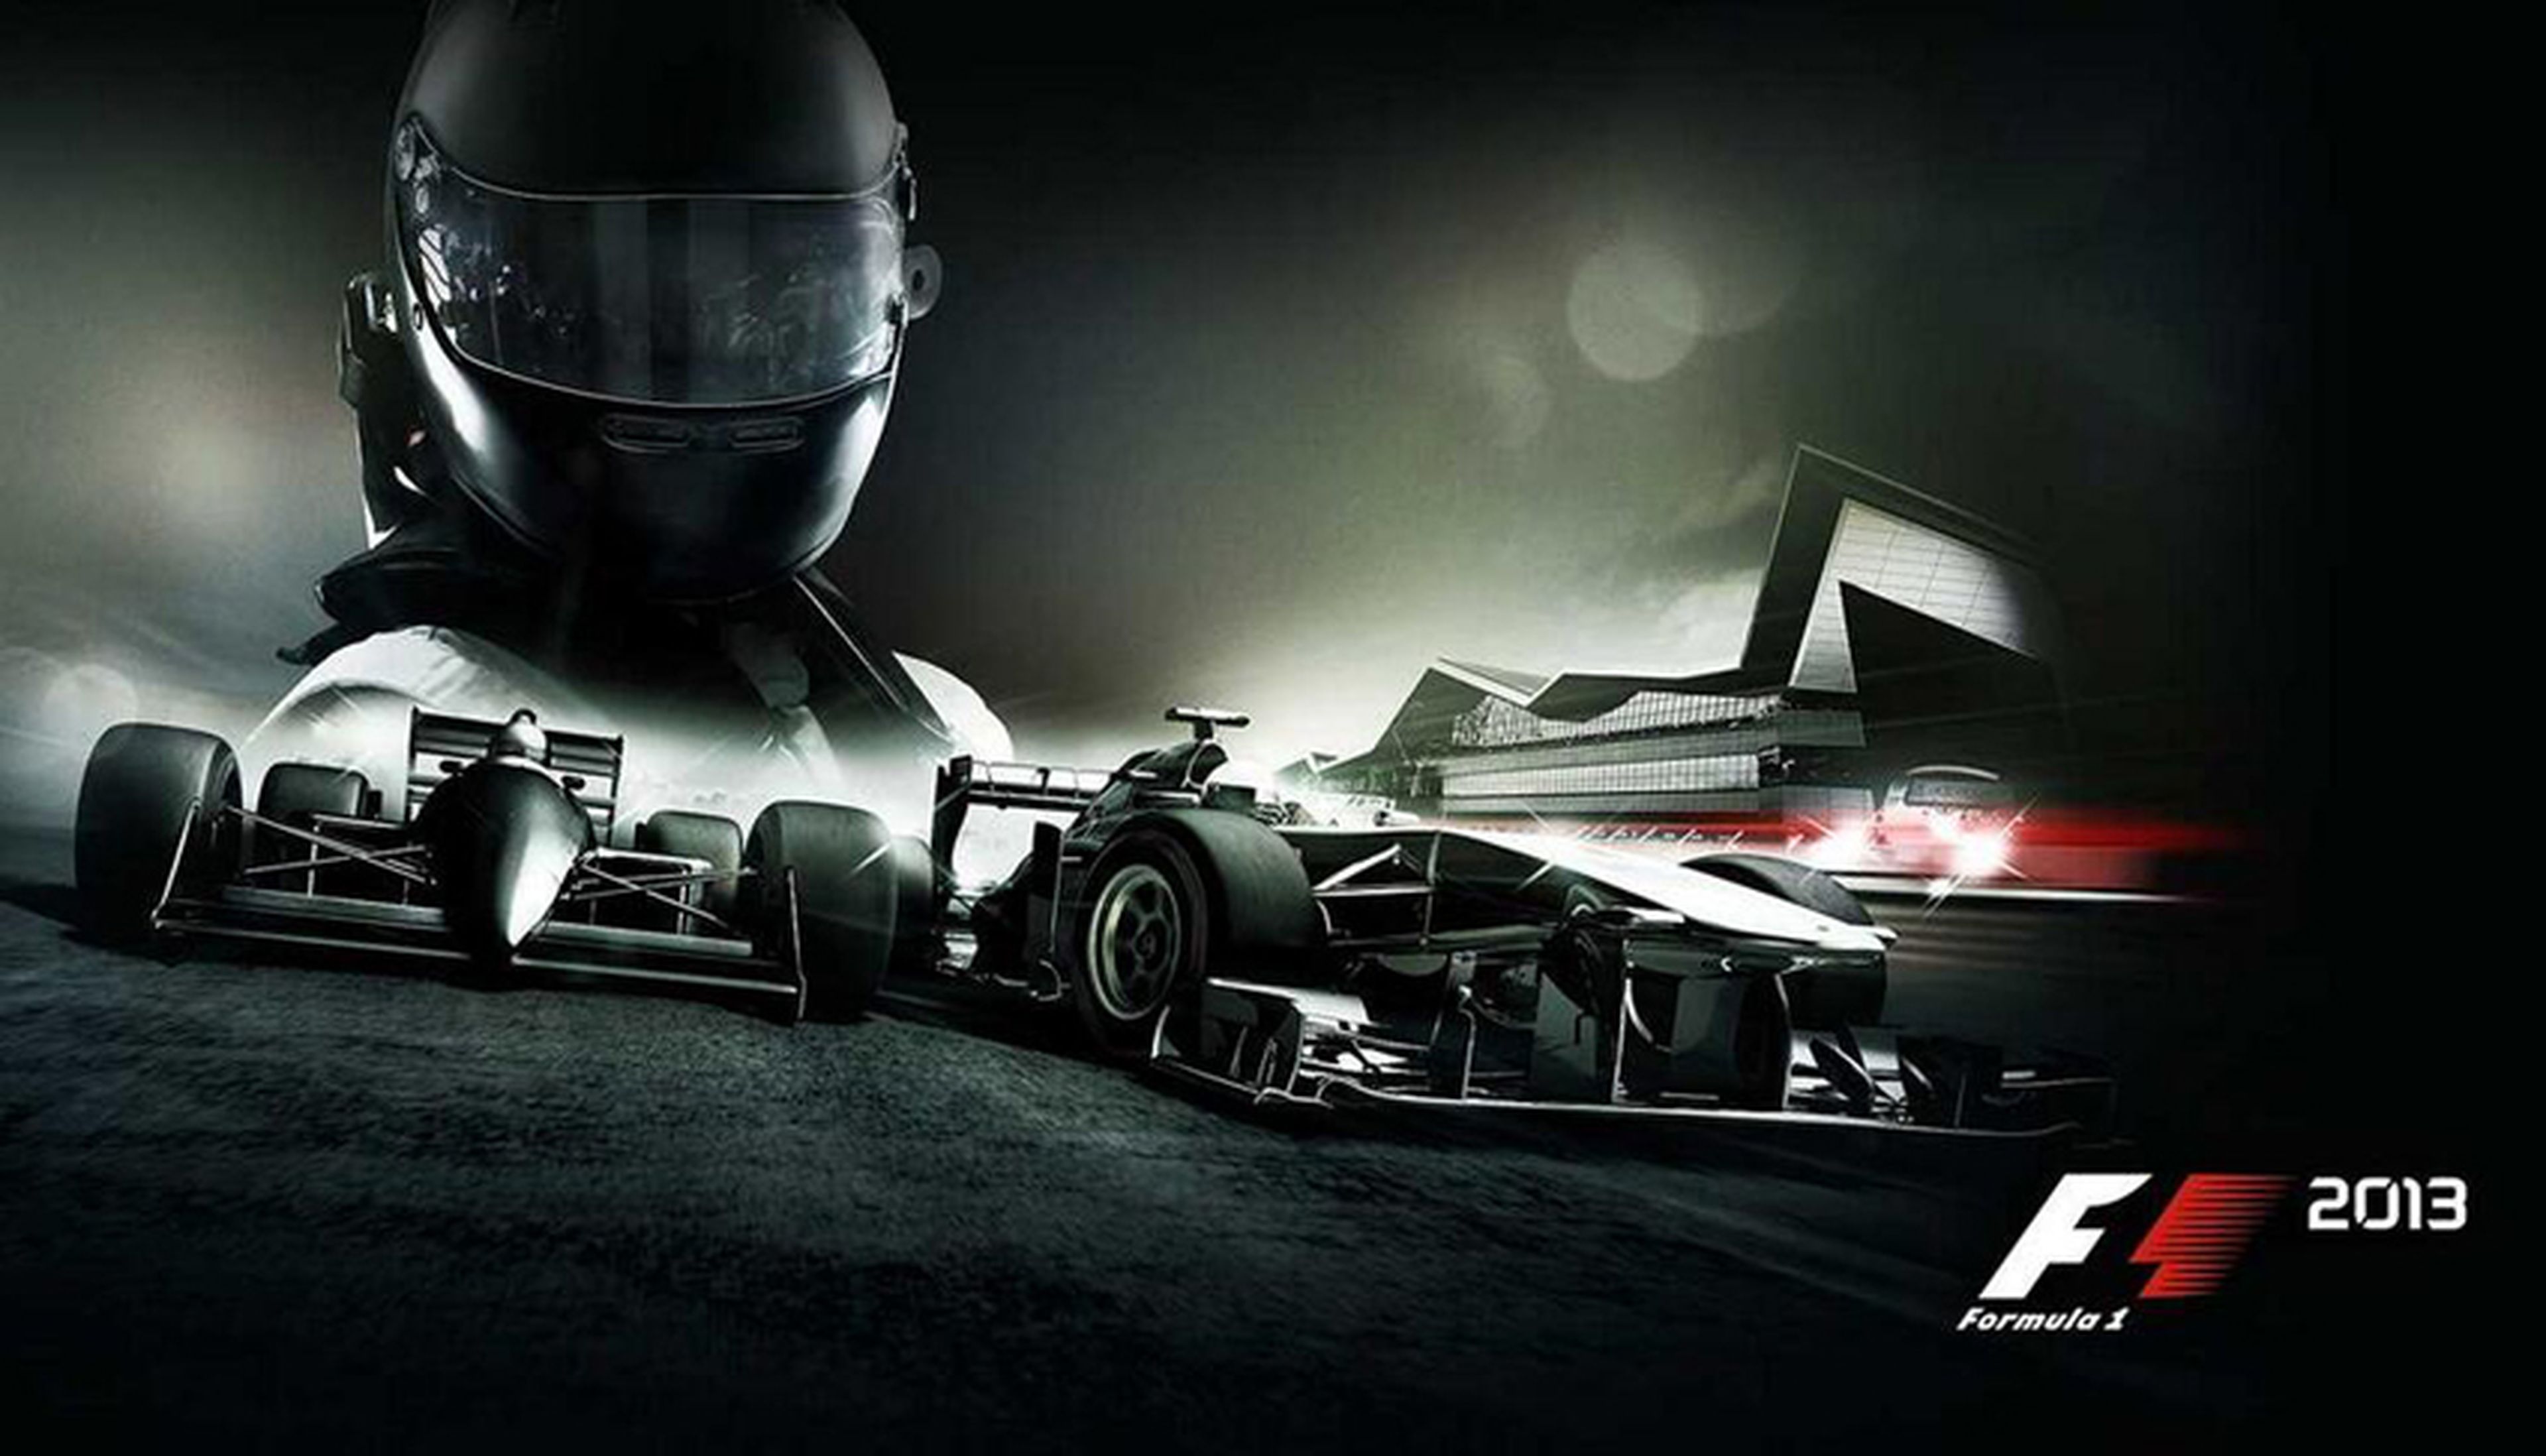 F1 2013 en la parrilla de salida